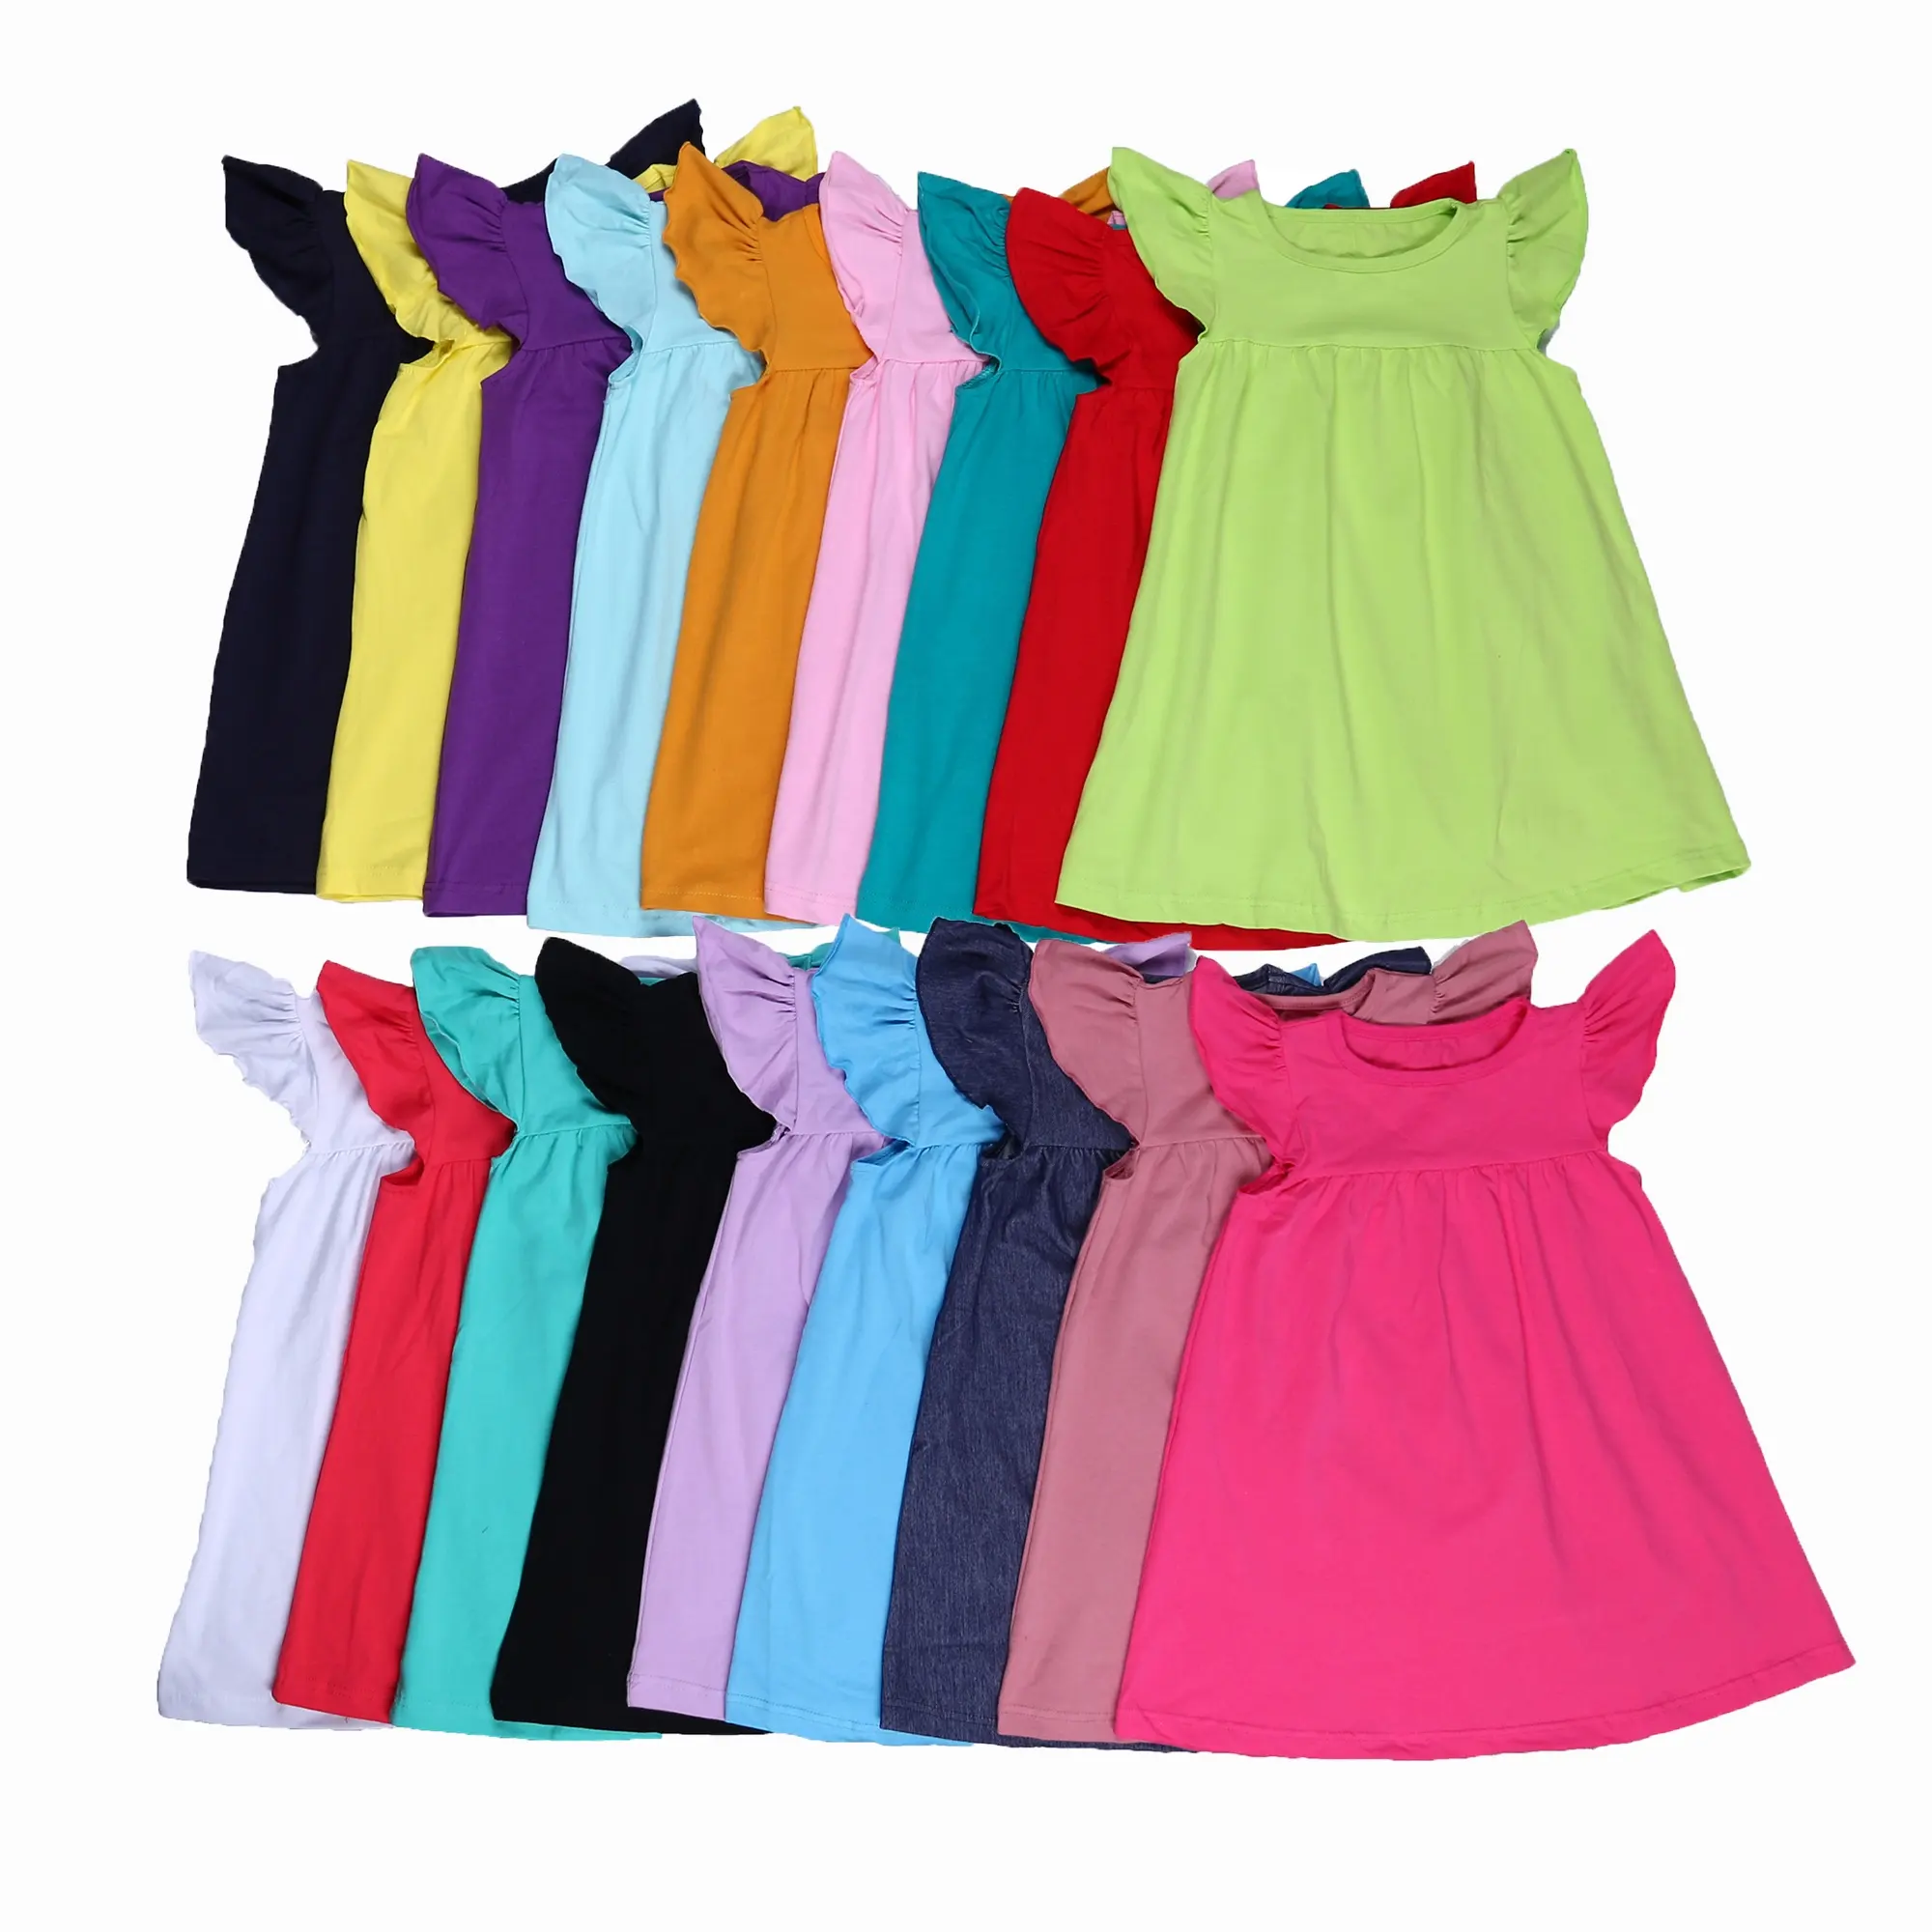 Manches courtes d'été flutter rts boutique enfant en bas âge aucune quantité minimale de commande stock taille de mélange en coton couleur unie filles perle robe